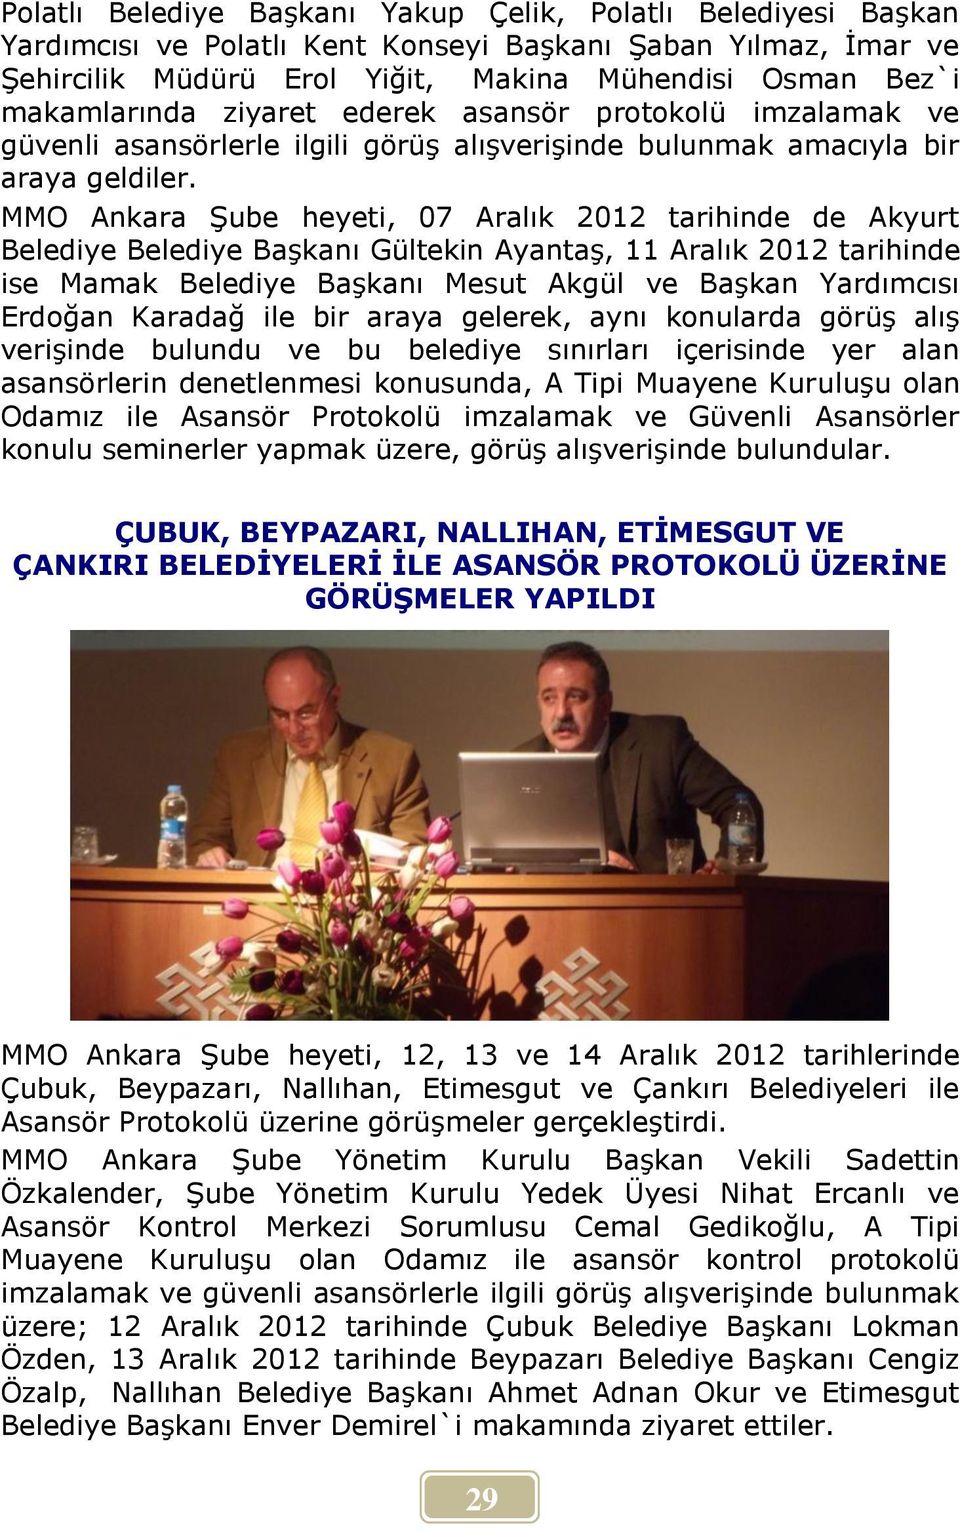 MMO Ankara Şube heyeti, 07 Aralık 2012 tarihinde de Akyurt Belediye Belediye Başkanı Gültekin Ayantaş, 11 Aralık 2012 tarihinde ise Mamak Belediye Başkanı Mesut Akgül ve Başkan Yardımcısı Erdoğan